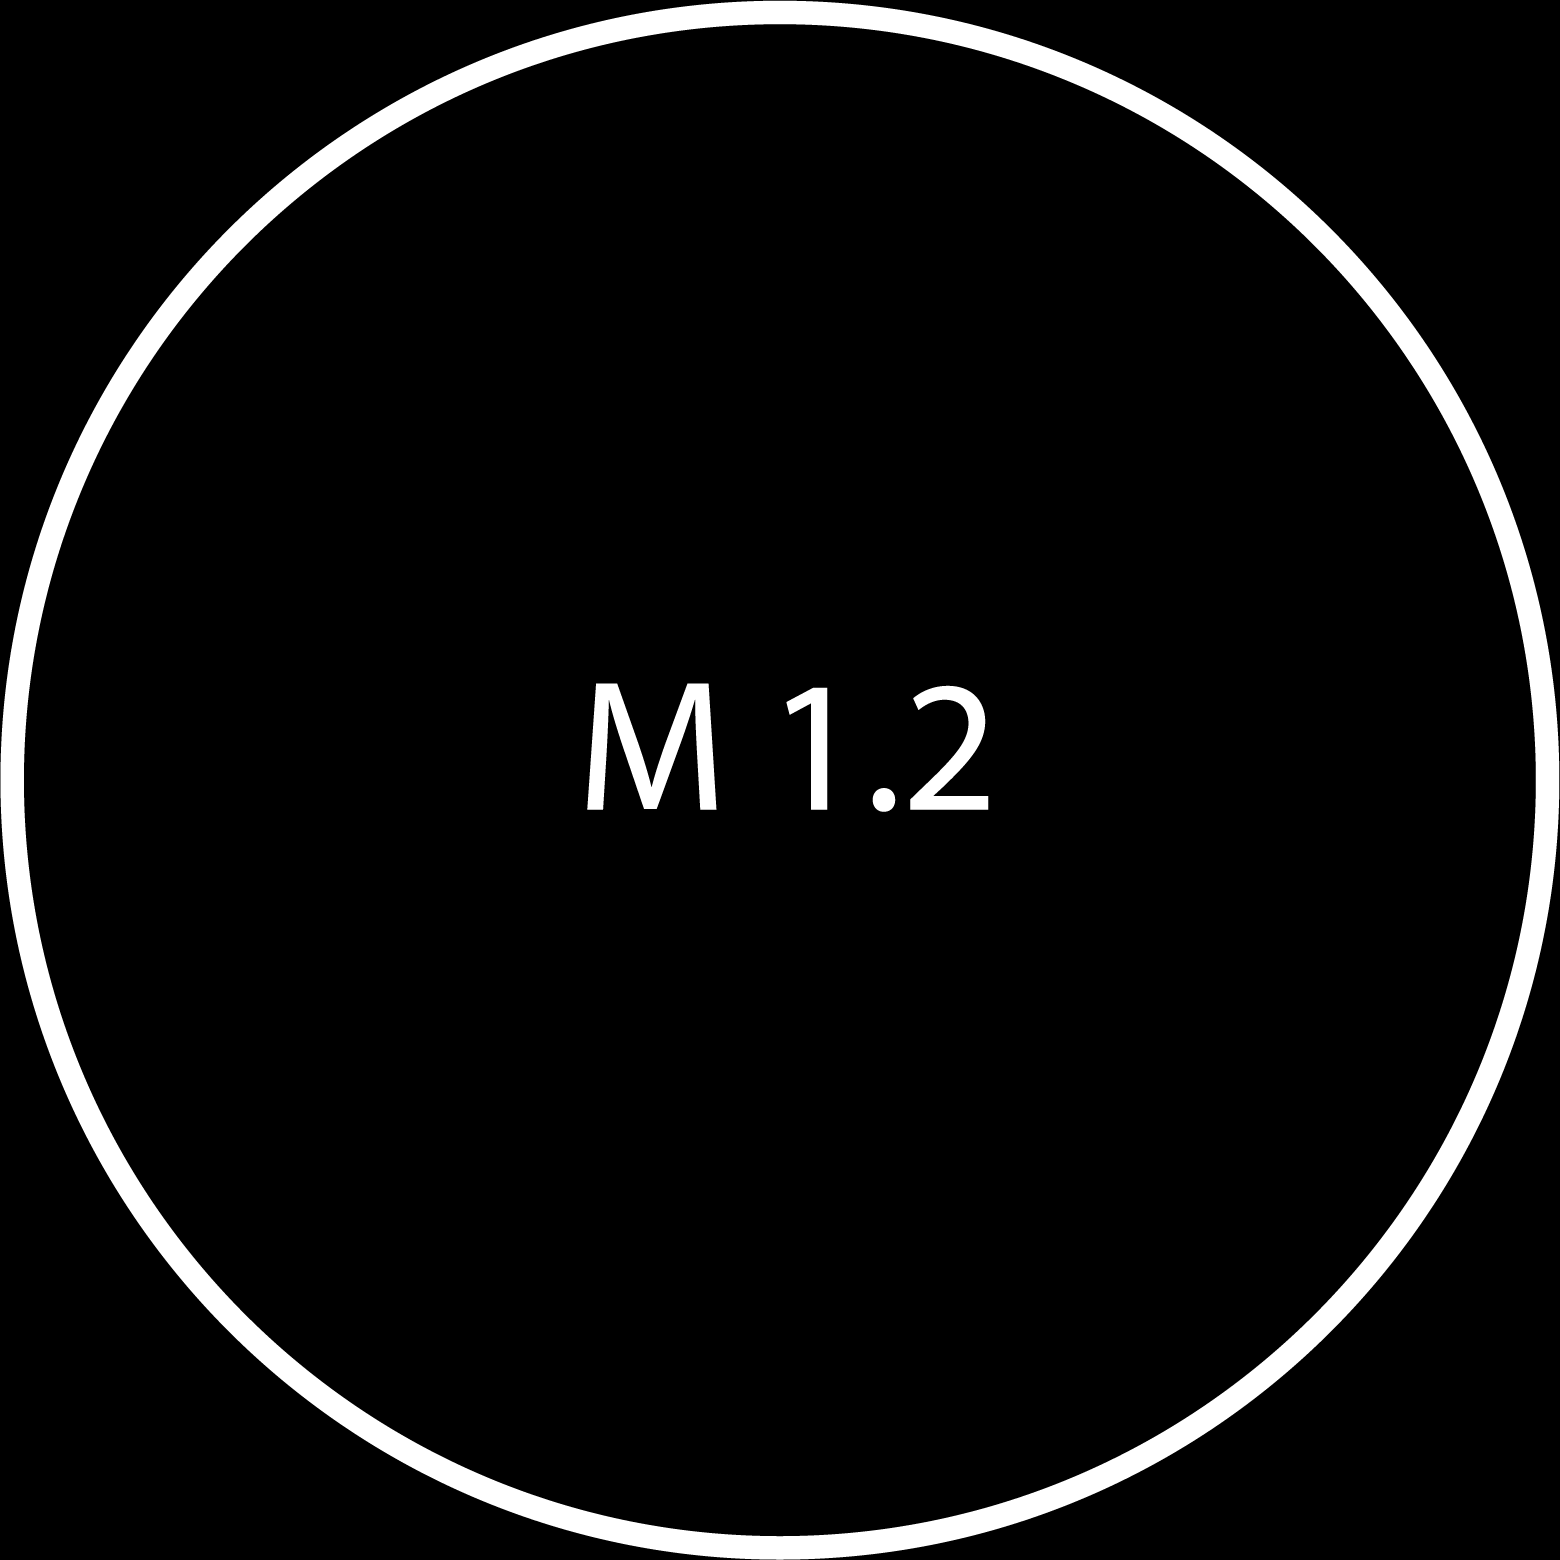 M 1.2